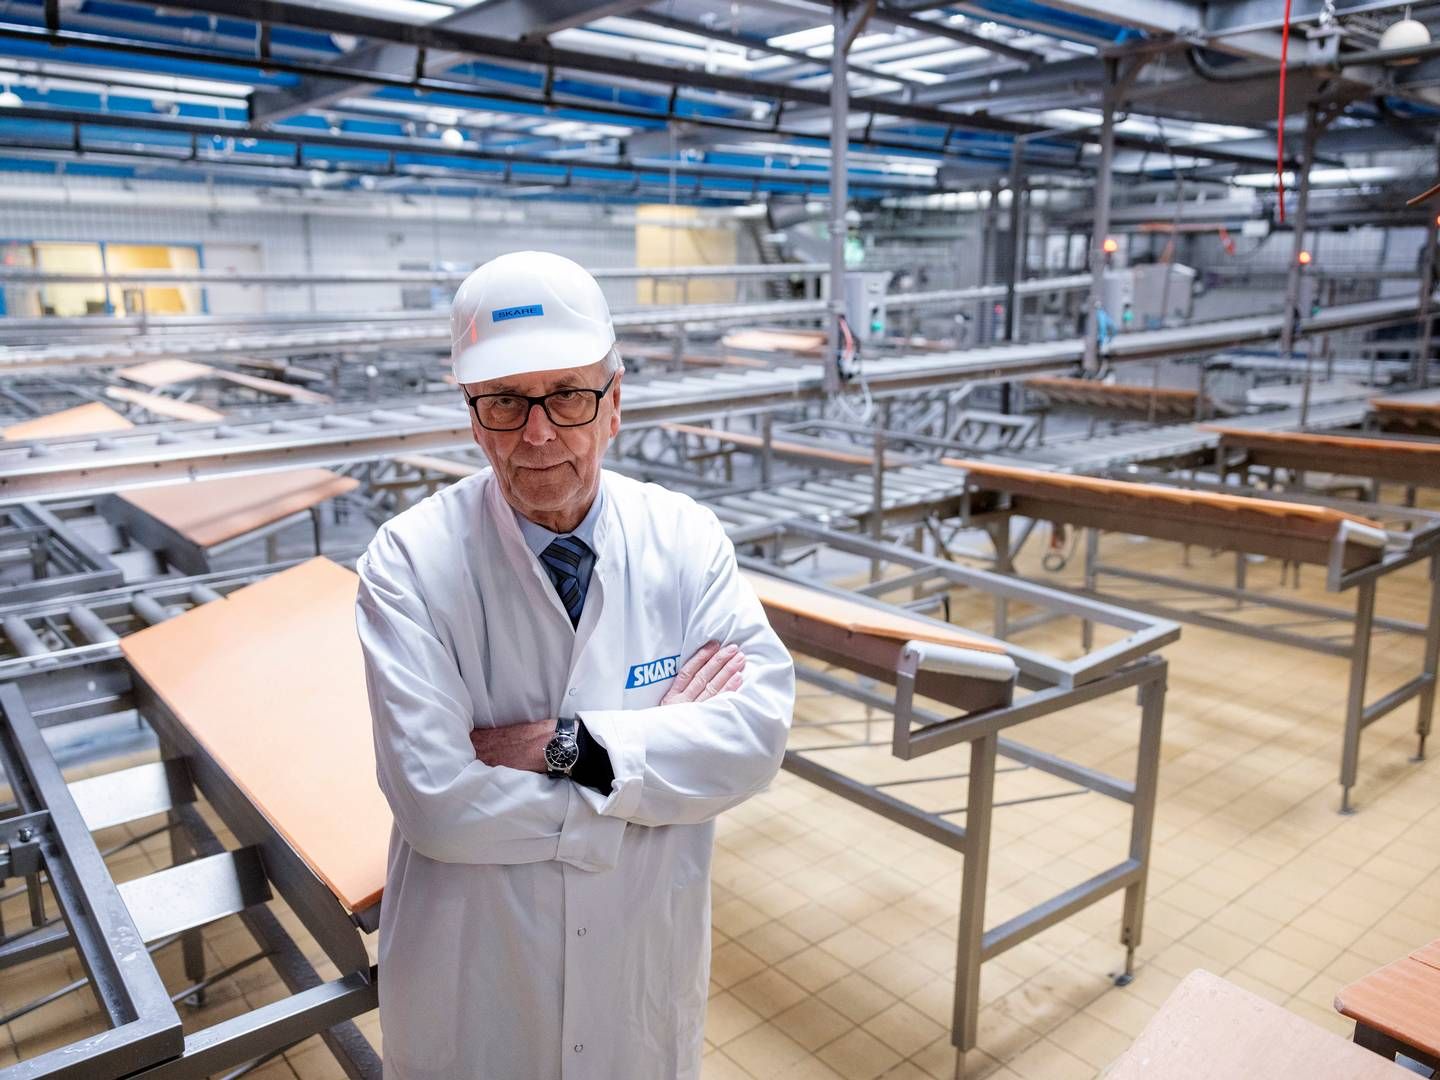 Fra 1. december og frem til konkursen i Skare-koncernen 1. februar solgte hollandsk slagteri Kød for 13,9 mio. kr. til Vejen-selskaberne. | Photo: Casper Dalhoff